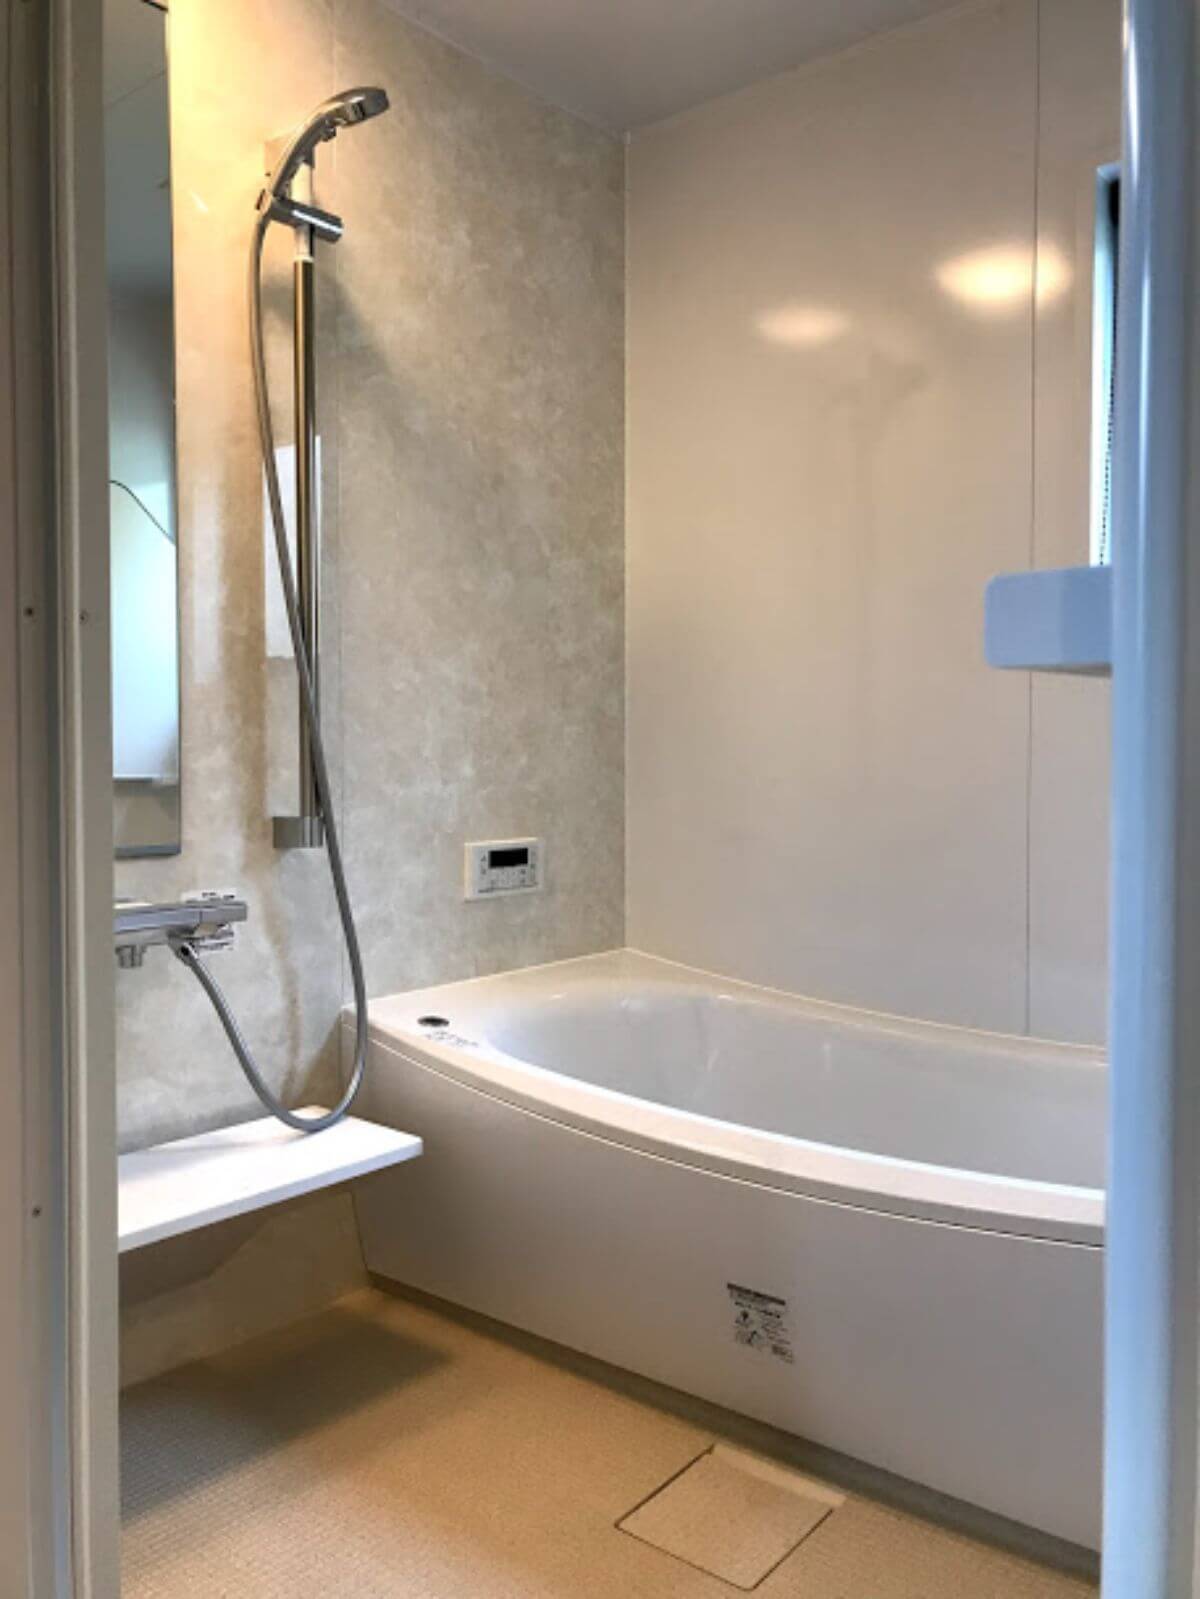 サザナ浴室の白い浴槽と床